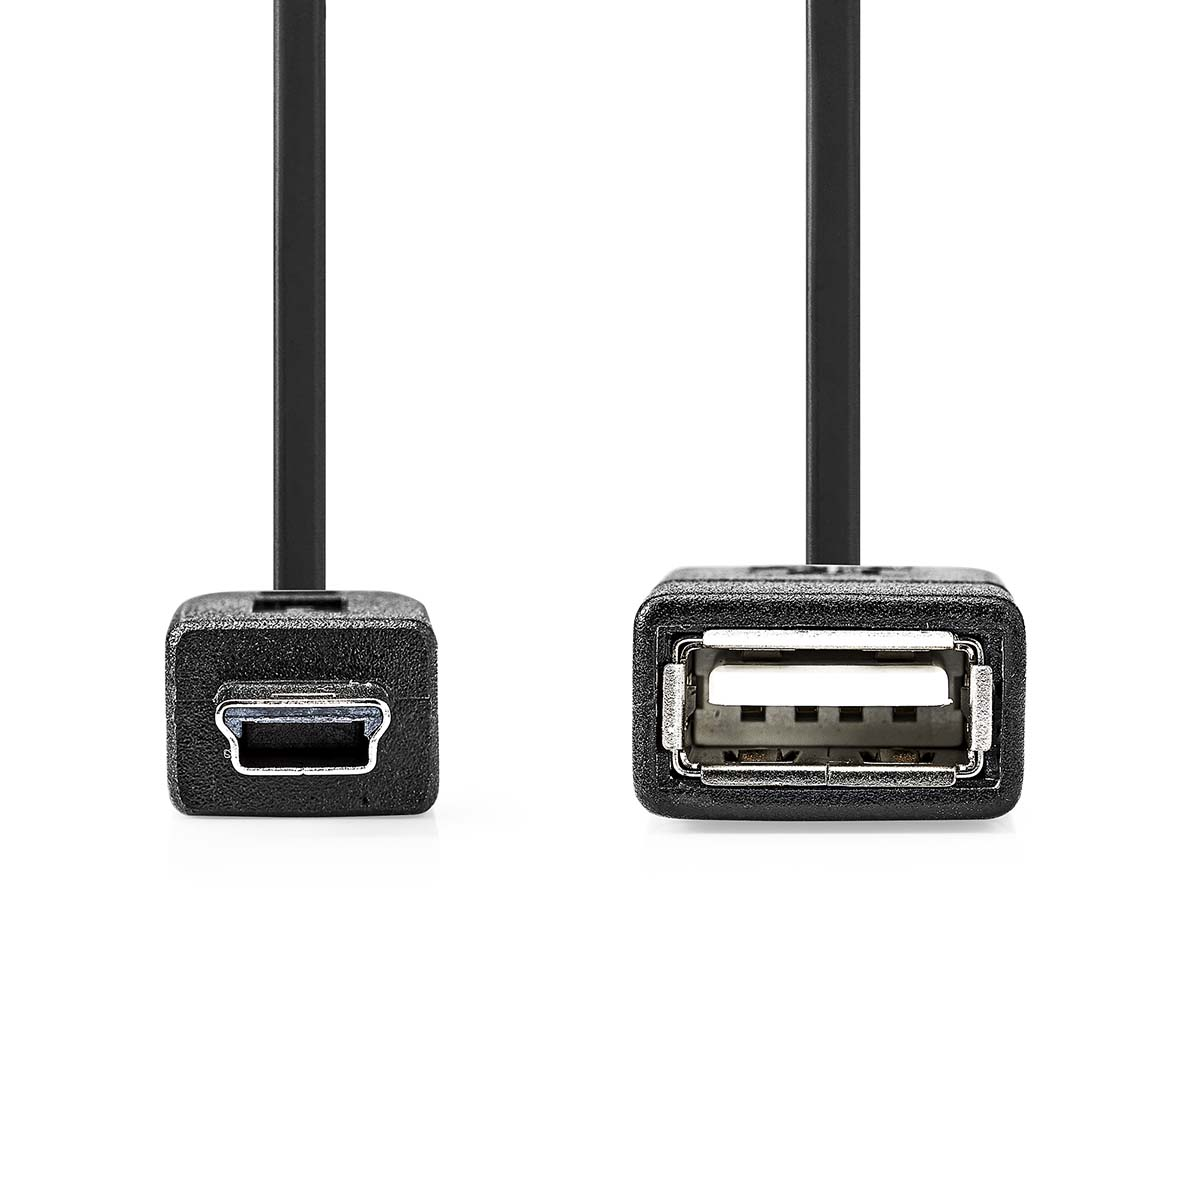 Micro-B USB CCGP60315BK02 NEDIS Adapter